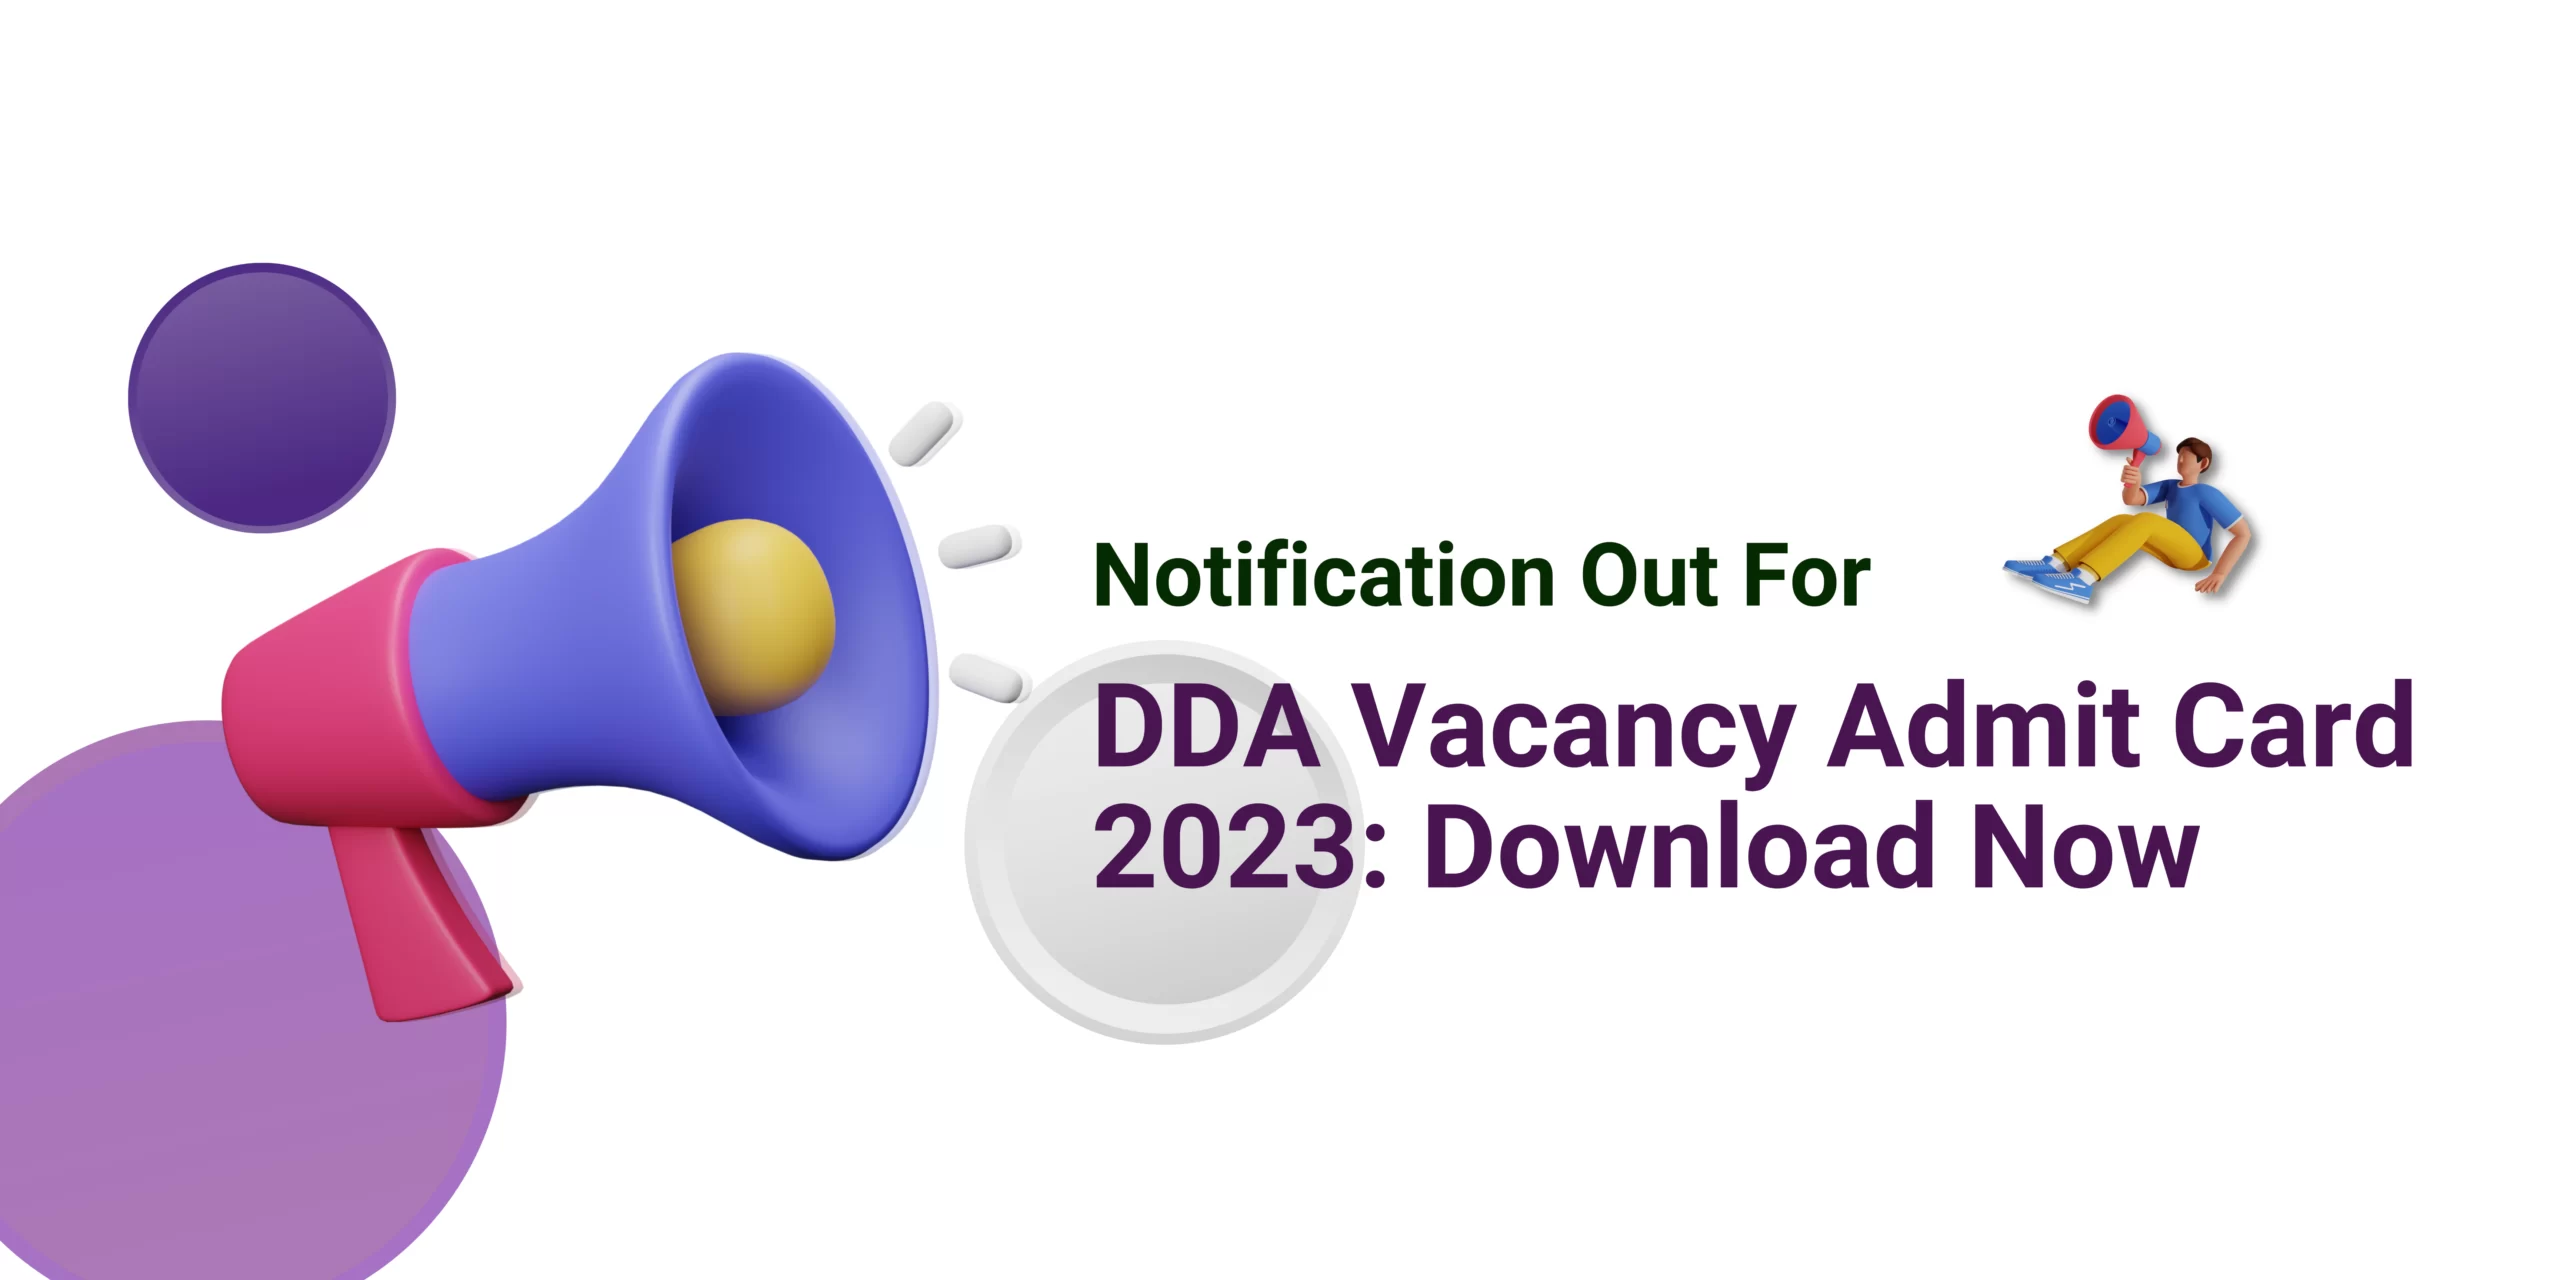 DDA Vacancy Admit Card 2023: Download Now